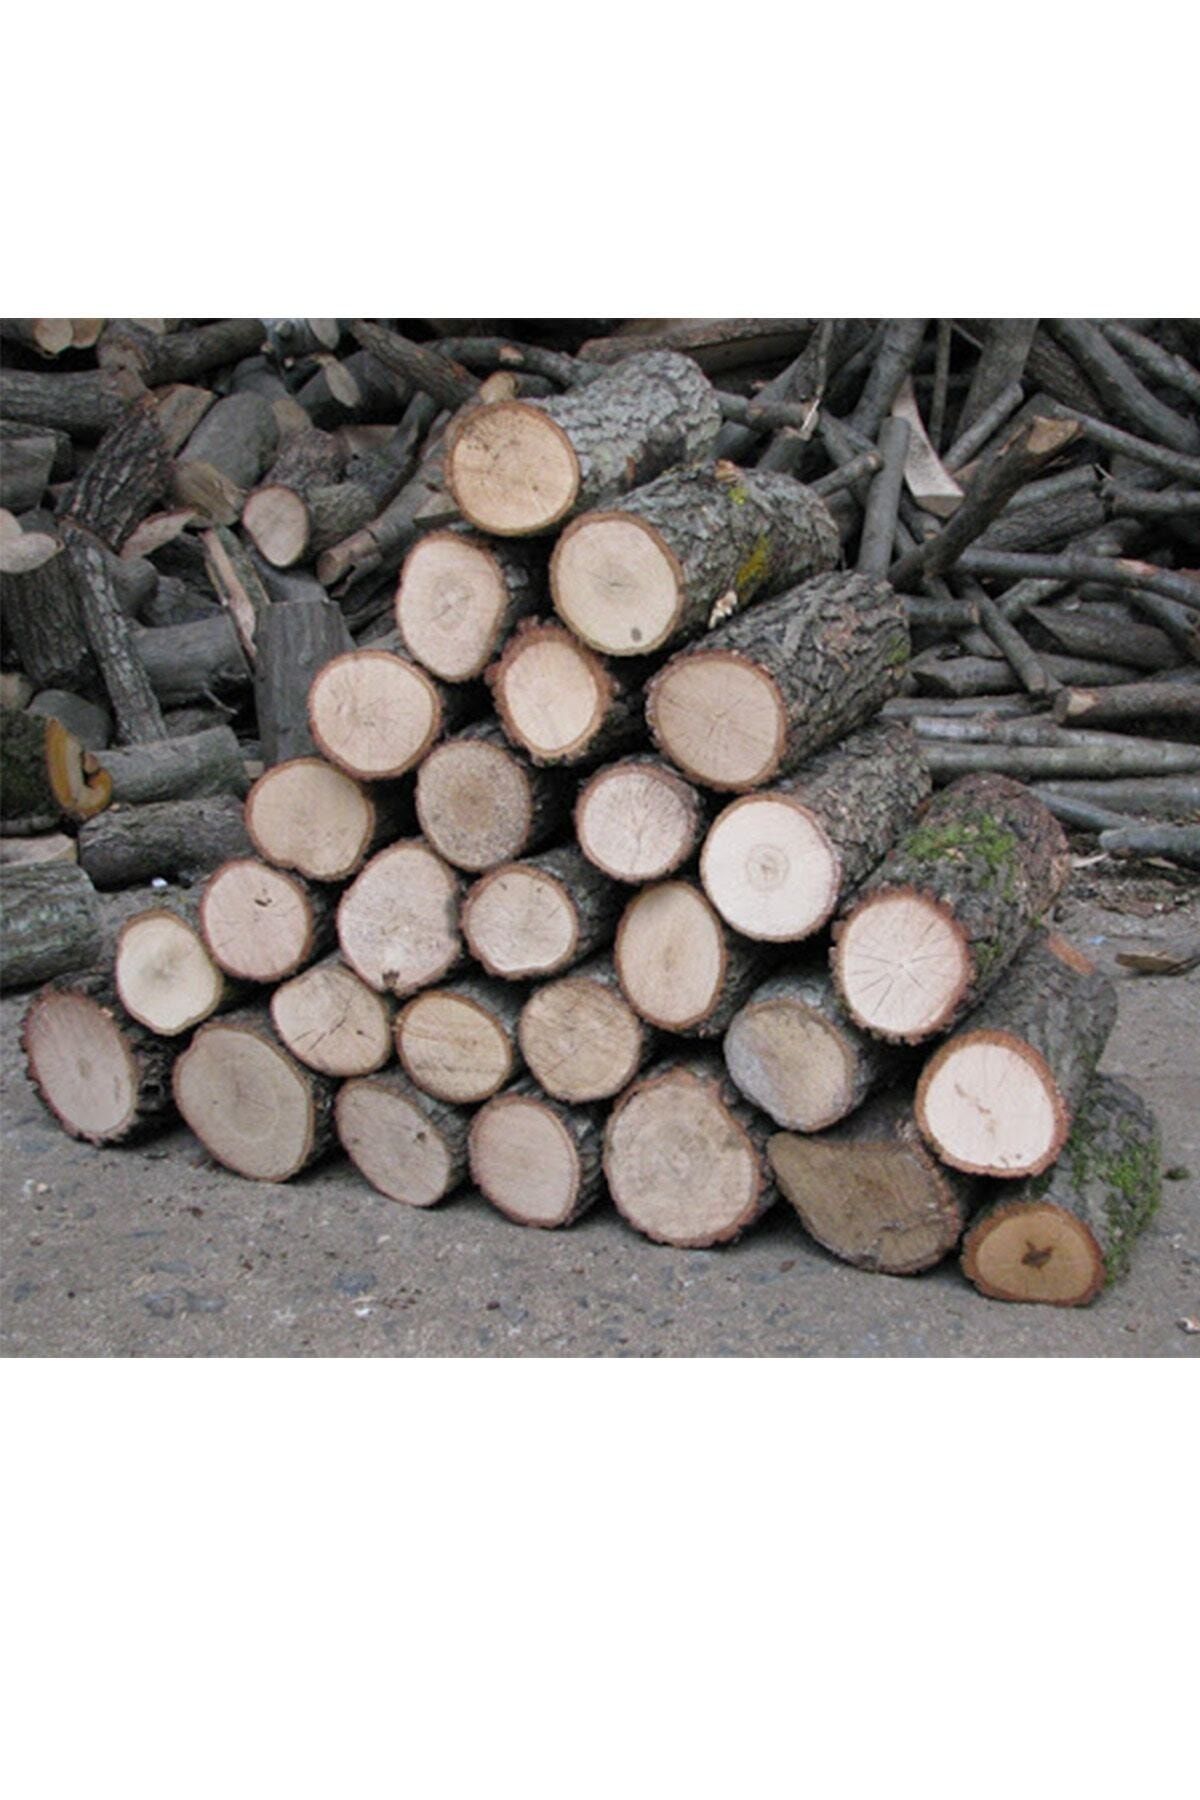 YüceGül 25 Kg Şöminelik Sobalık Meşe Odunu Hakiki Meşe Odunu